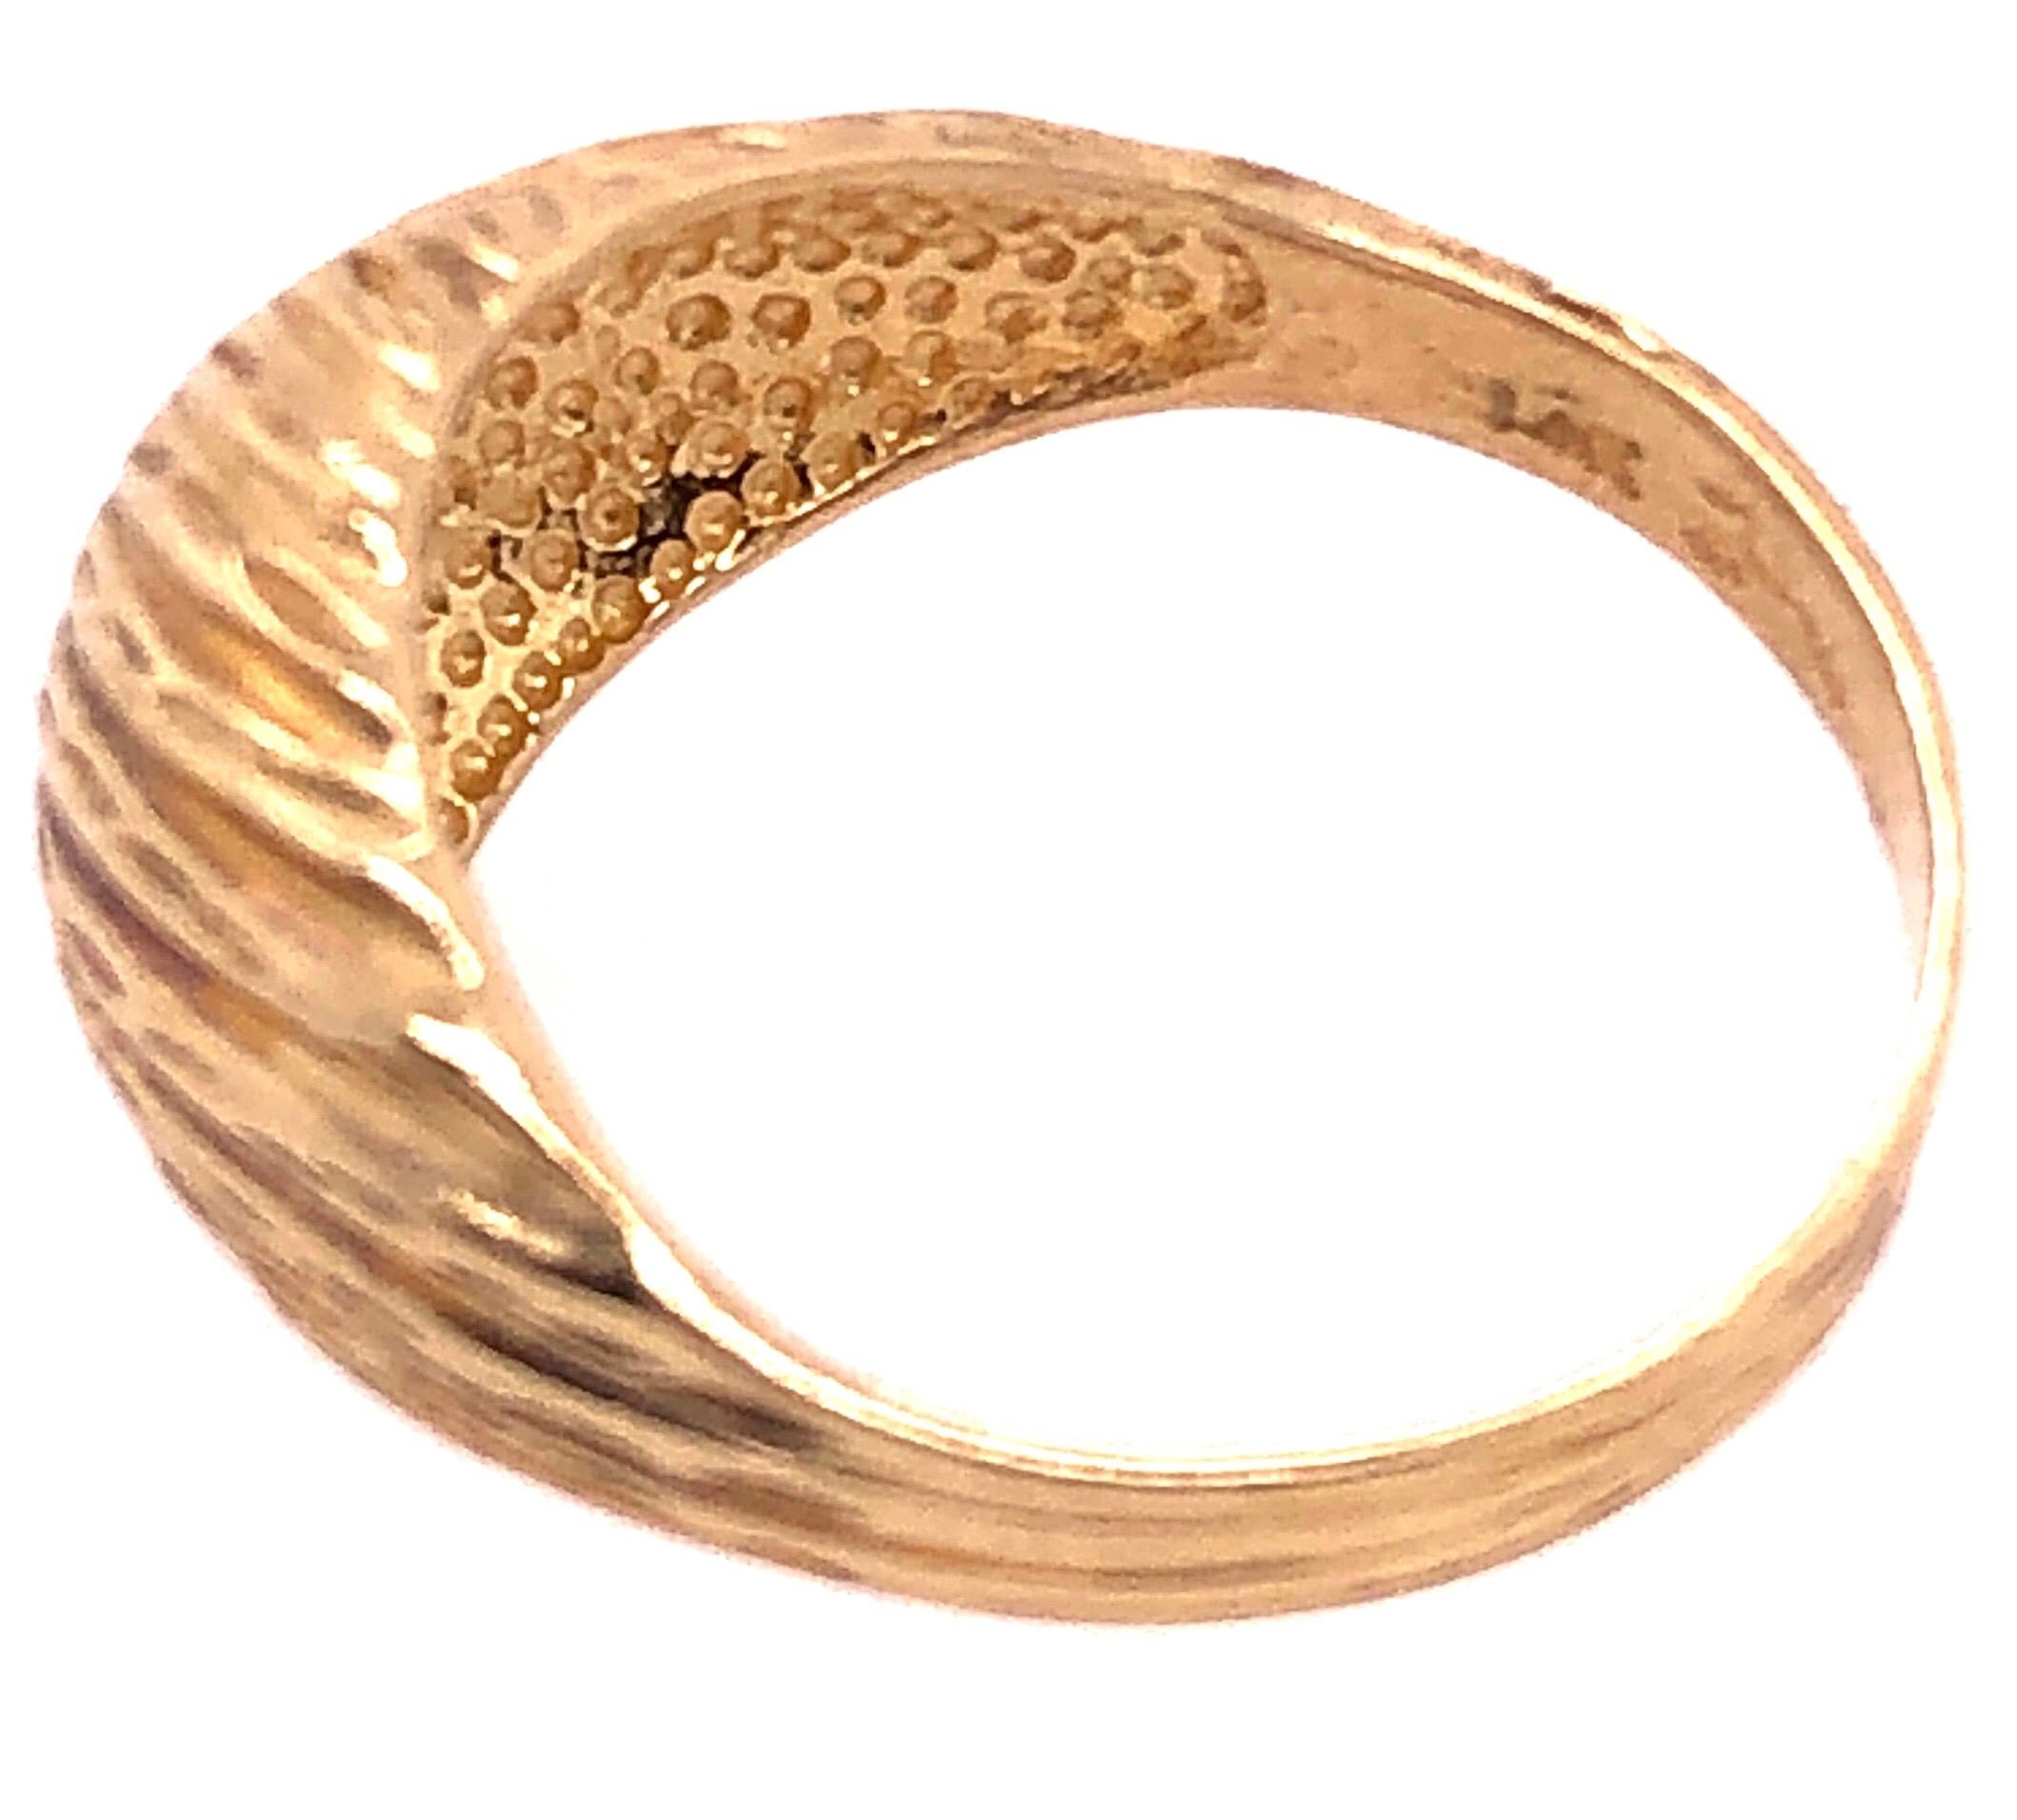 14 Karat Yellow Gold Free Form Ring.
Size 7.75
4 grams total weight.